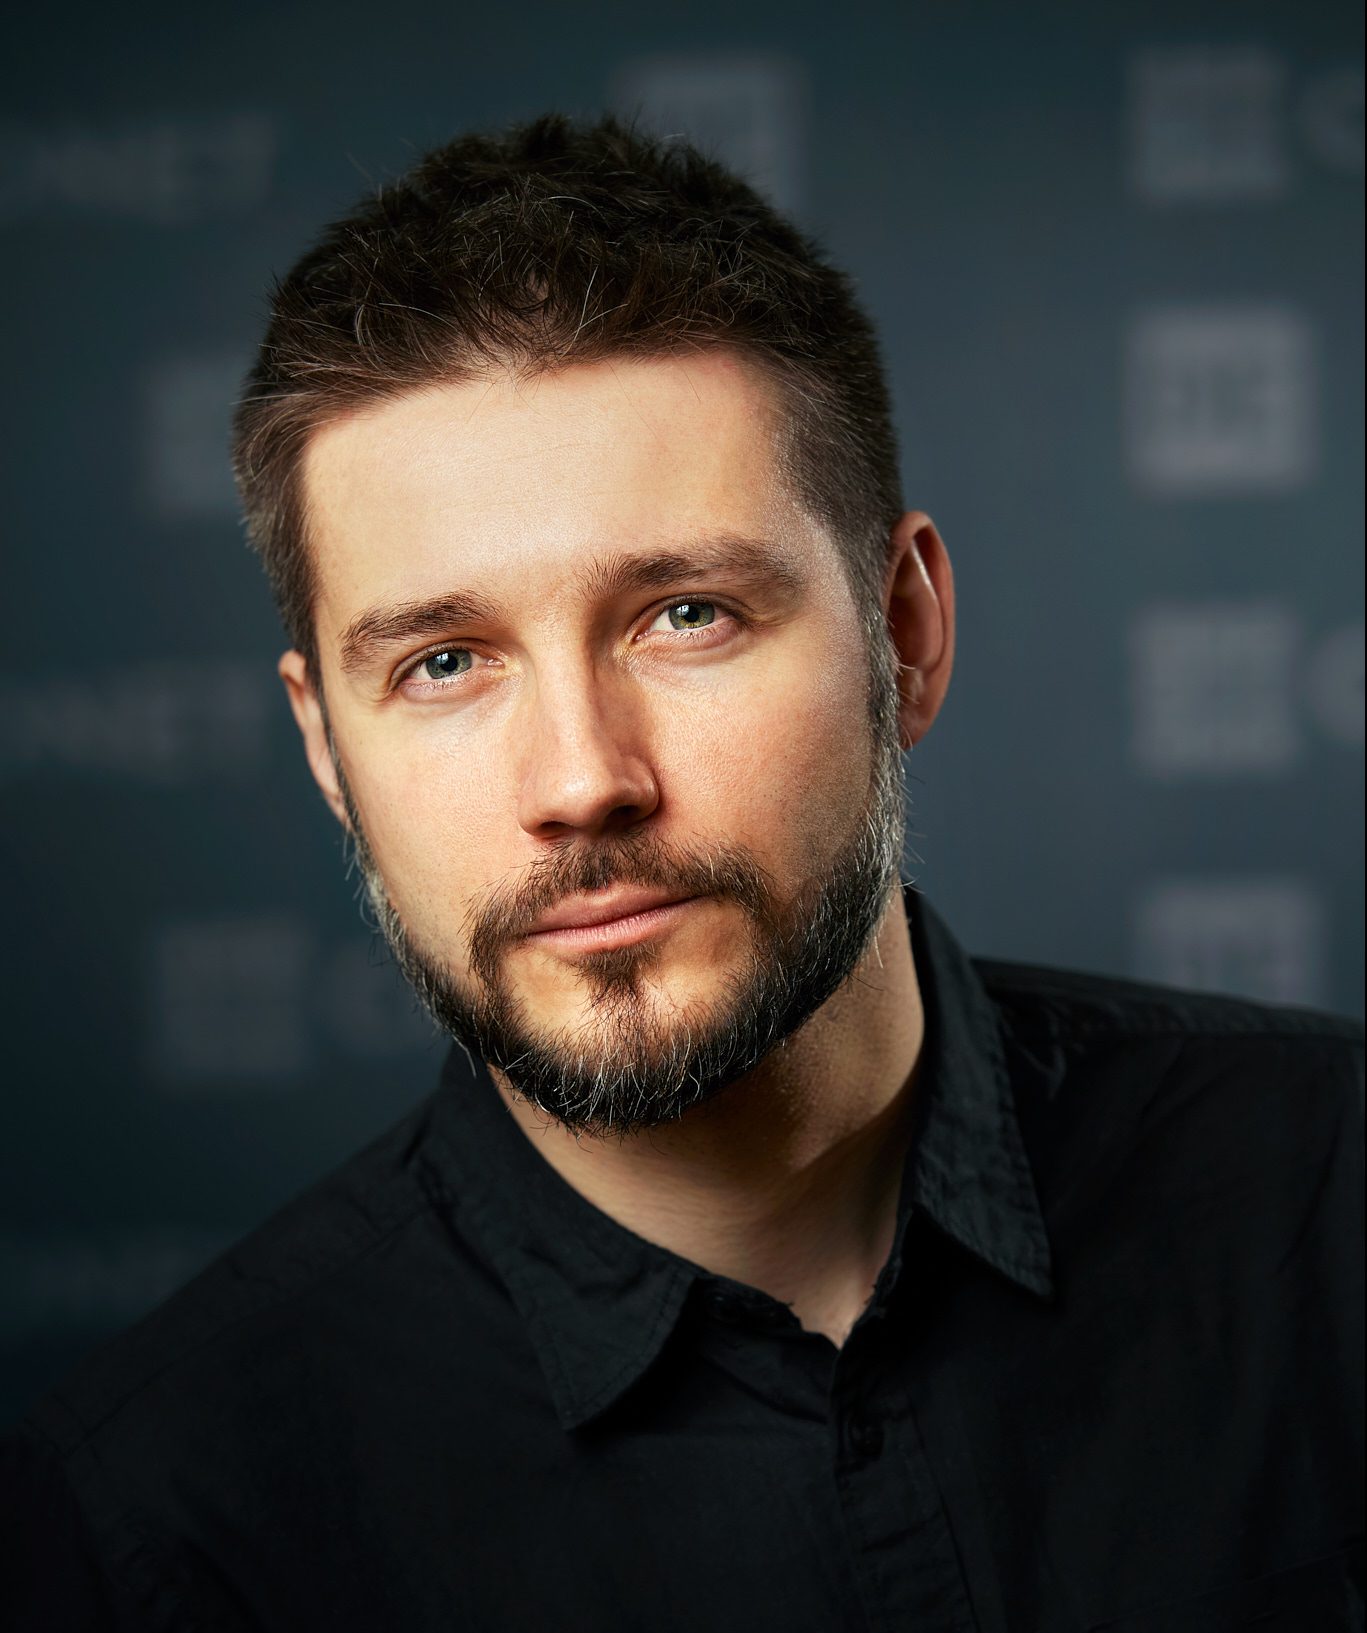 Piotr Konieczny, founder of Niebezpiecznik.pl: Cybersecurity in the era of remote work